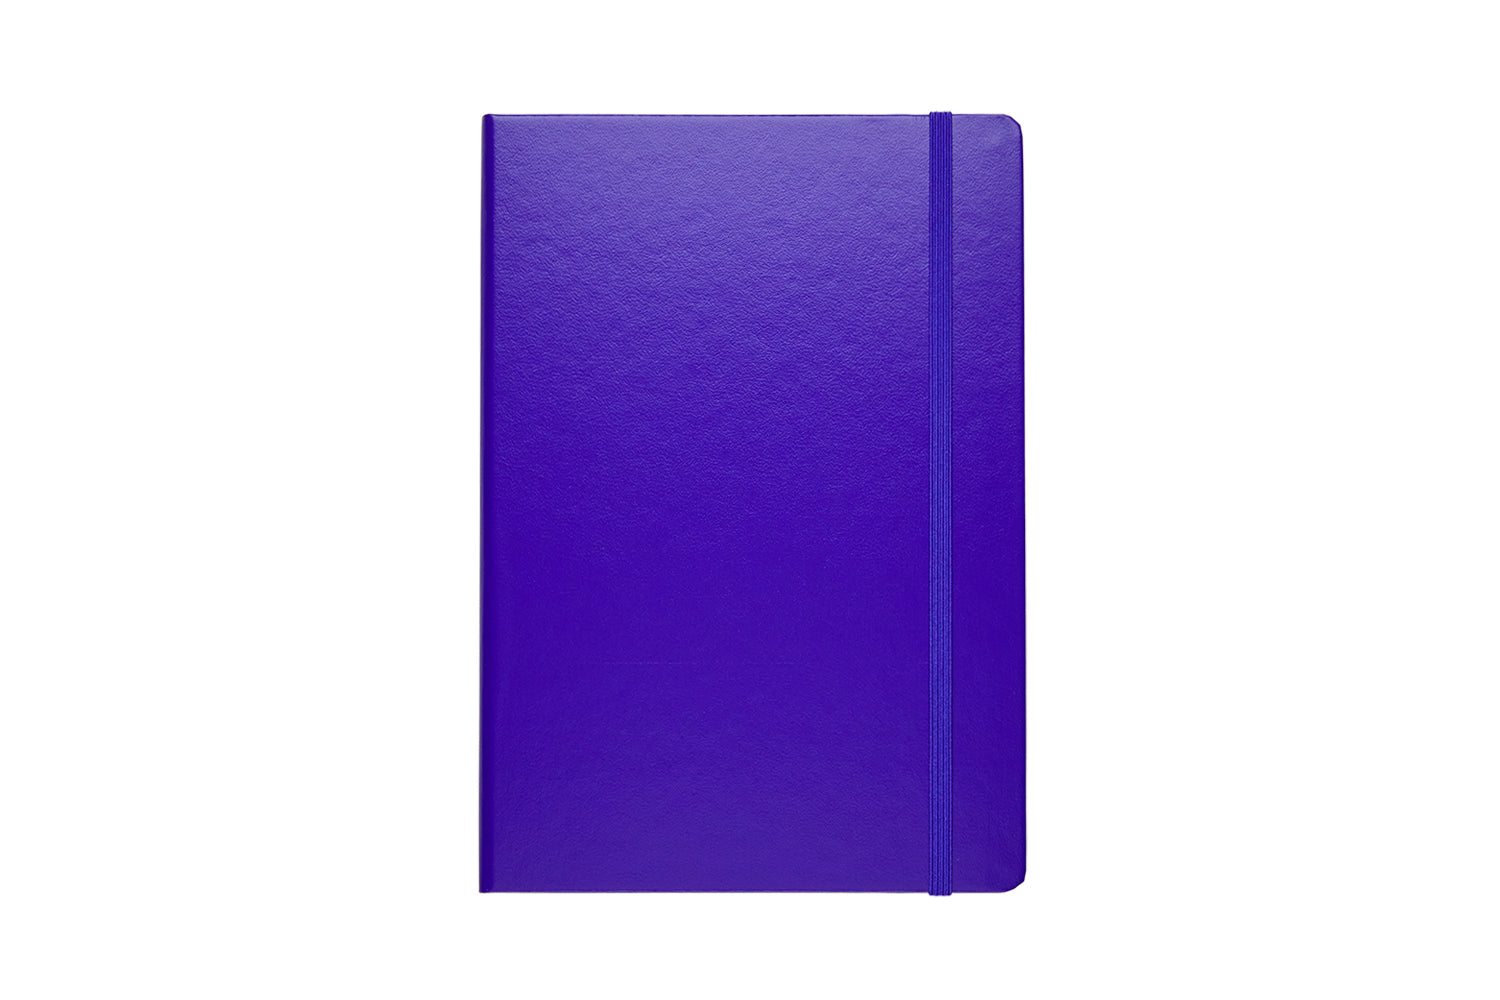 Leuchtturm1917 A5 Medium Hardcover Dotted Notebook - Lilac